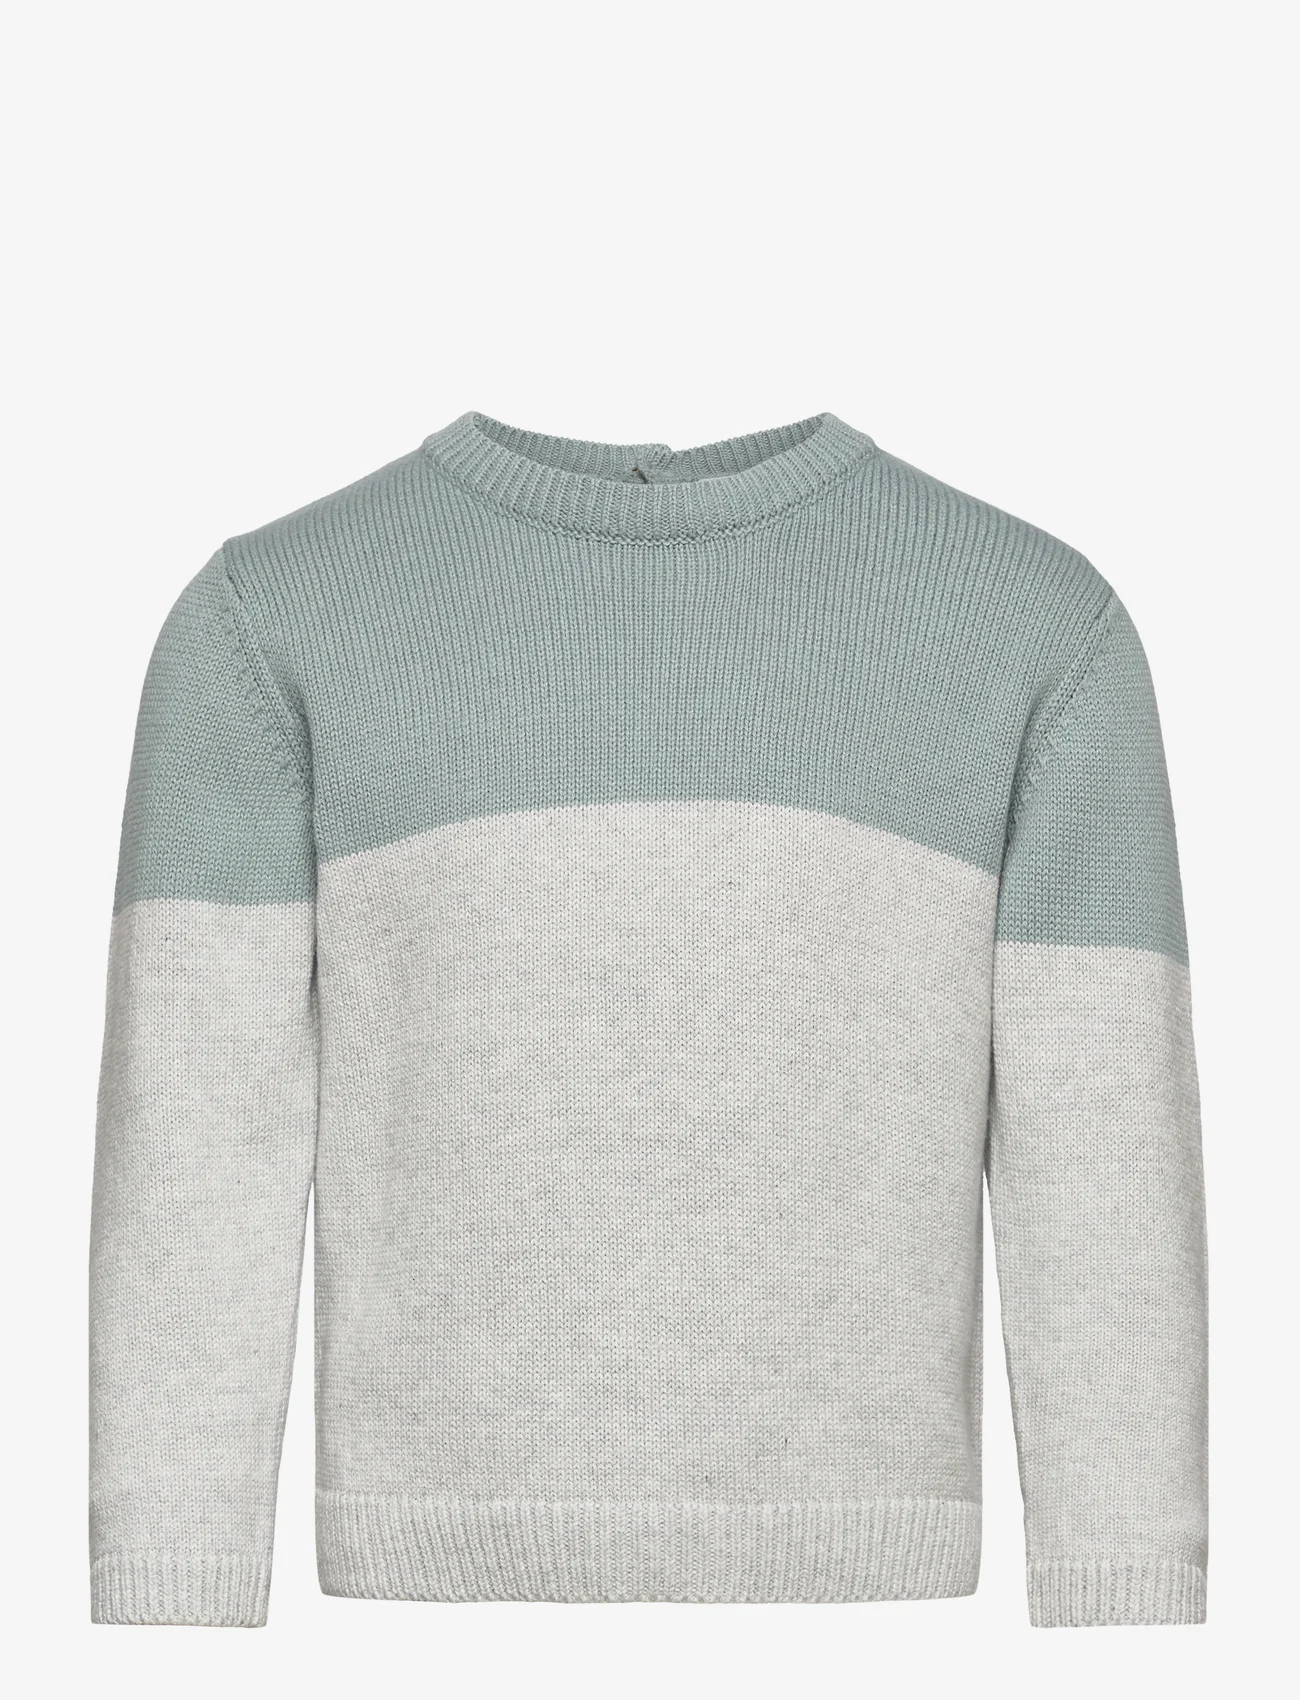 Mango - Contrasting knit sweater - svetarit - medium grey - 0